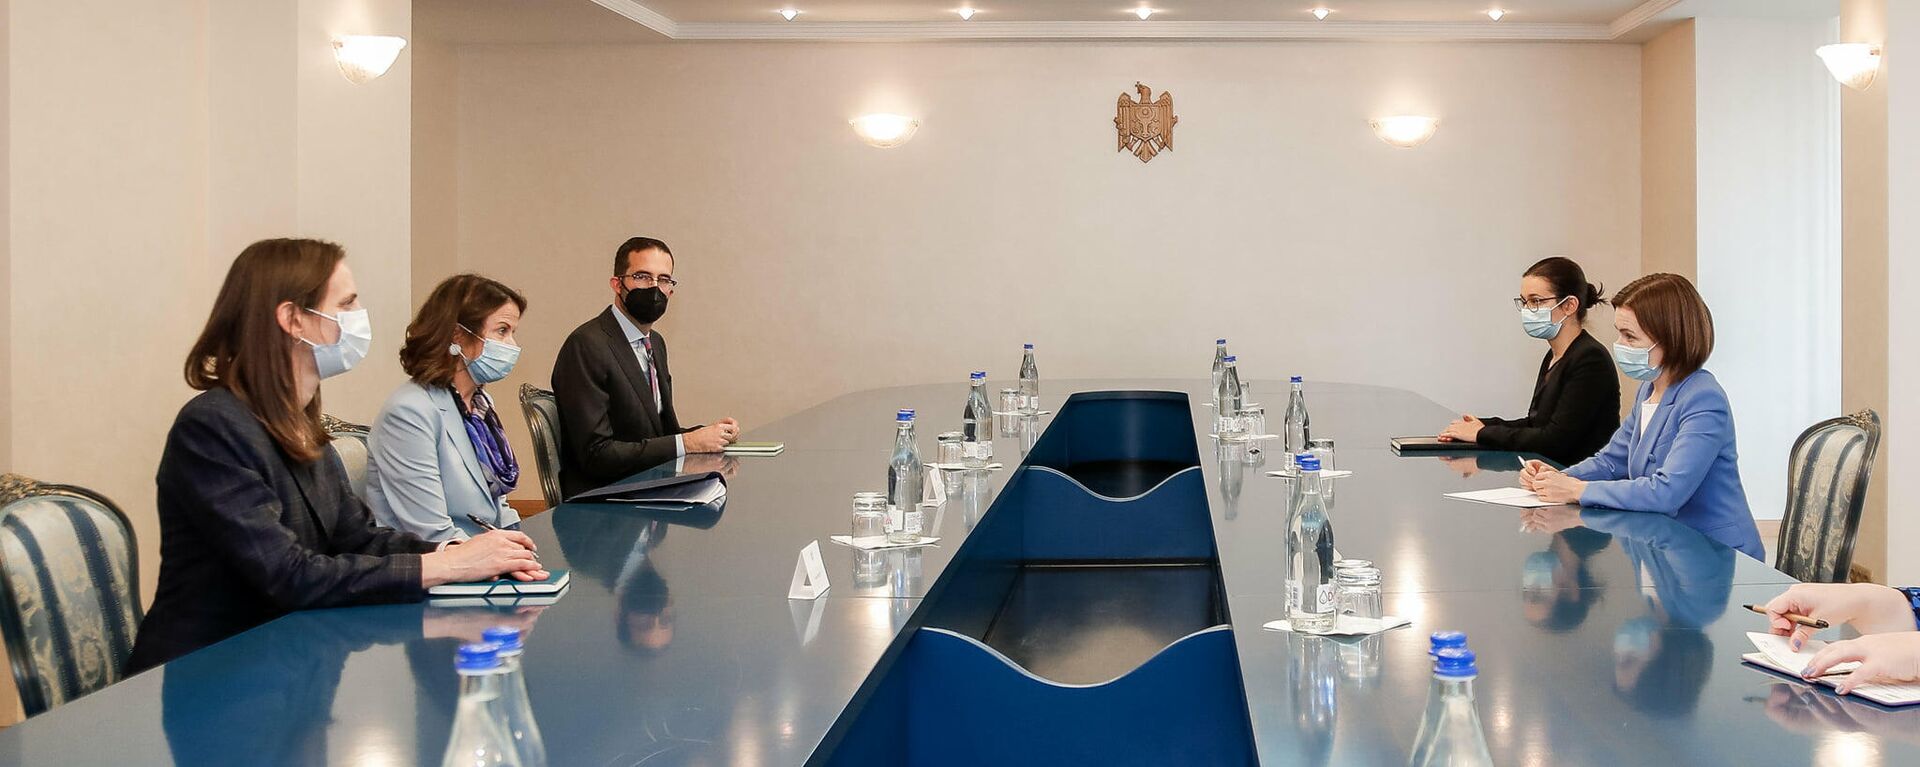 Президент Молдовы Майя Санду встретилась с заместителем помощника государственного секретаря США по Центральной и Восточной Европе Робин Дунниган - Sputnik Молдова, 1920, 04.10.2021